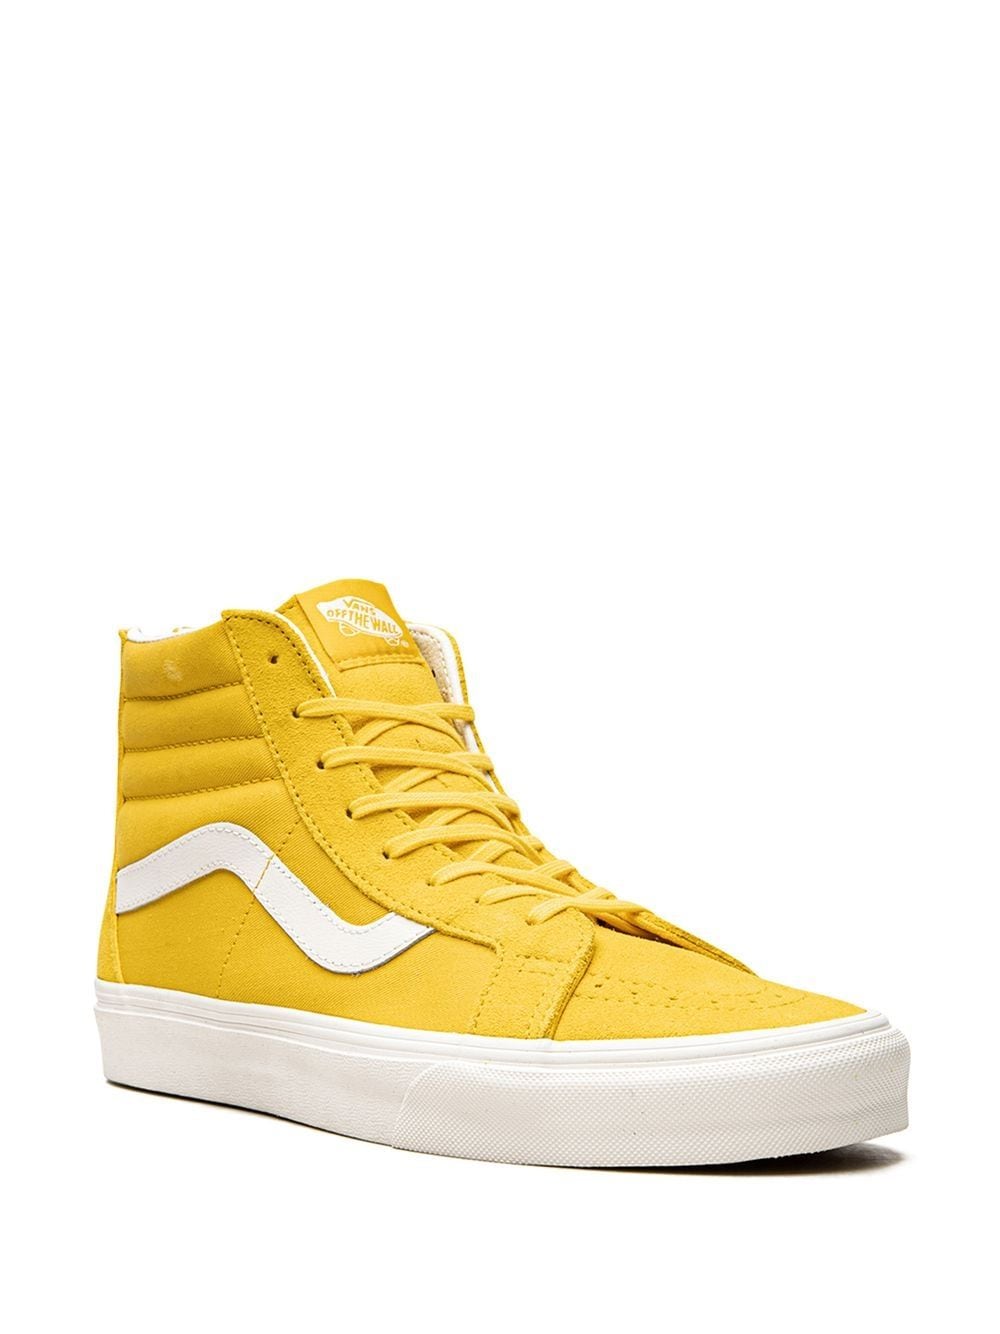 Shop Vans Sk8-hi Reissue Sneakers In Yellow